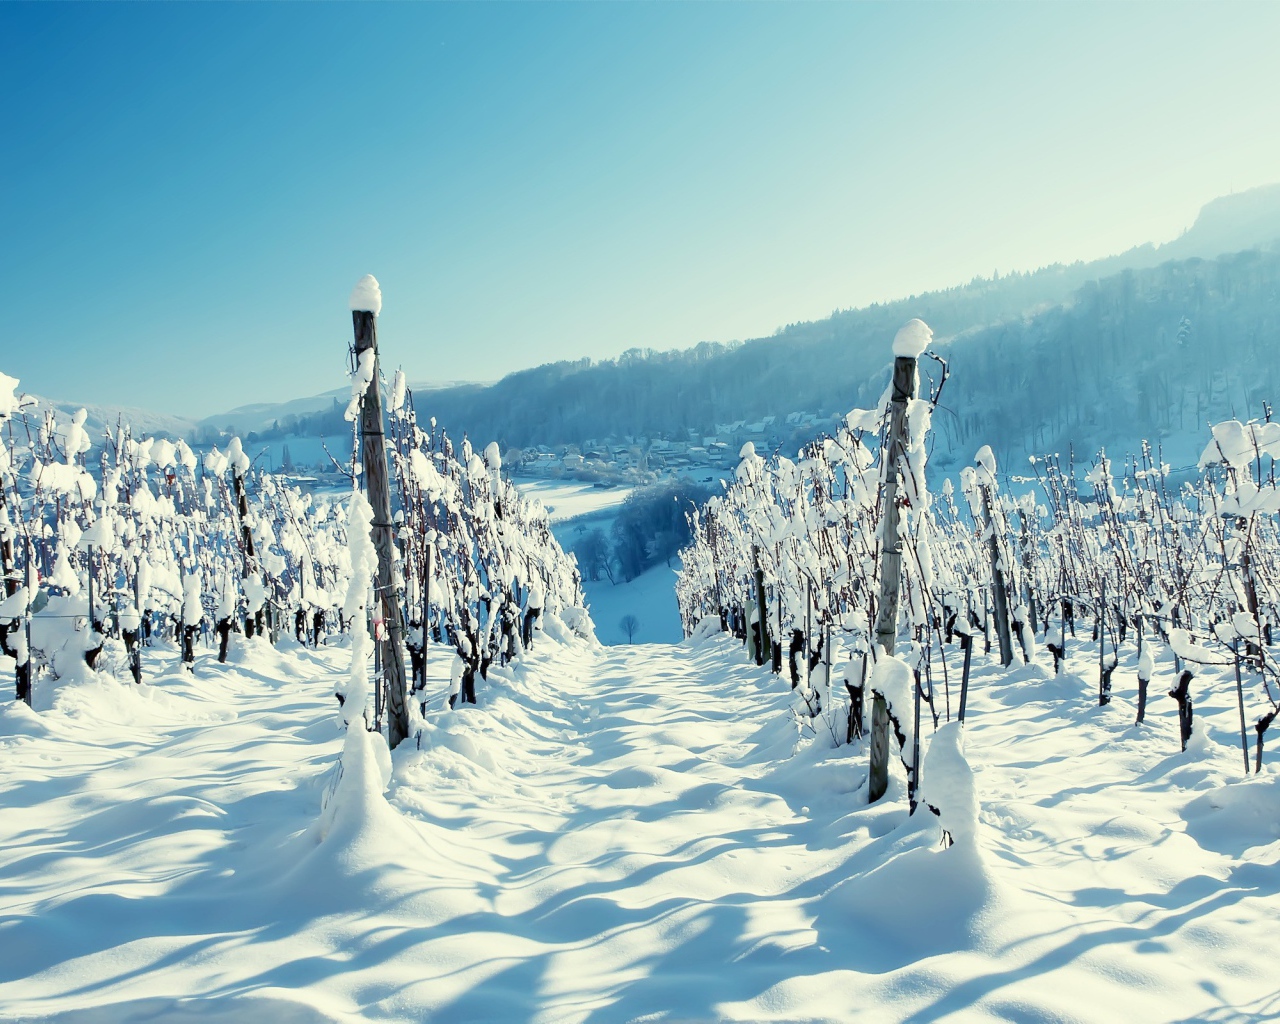 Виноградник в зимнее время